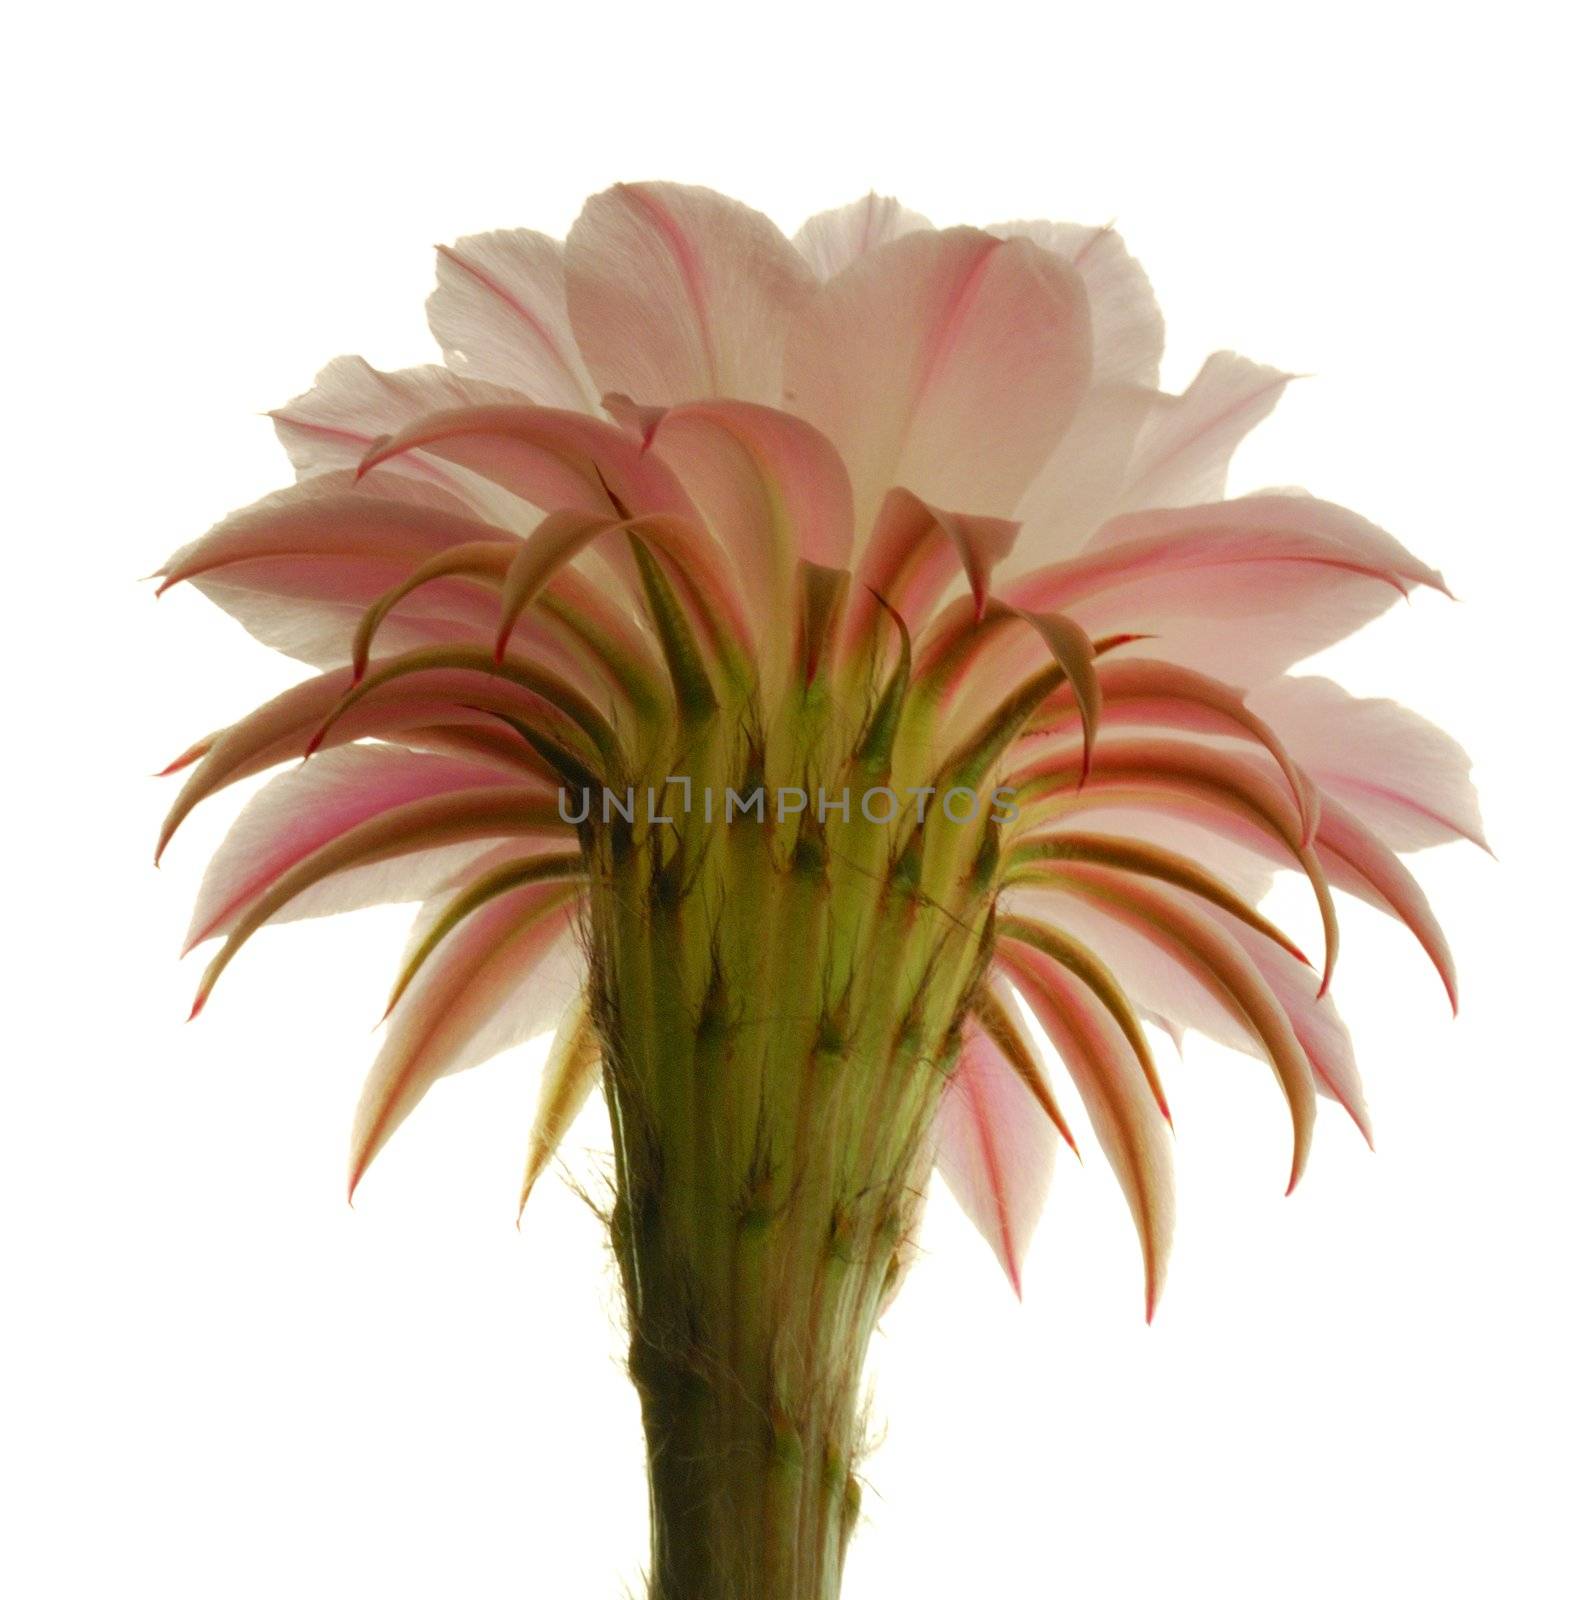 Cactus flower by Sergieiev